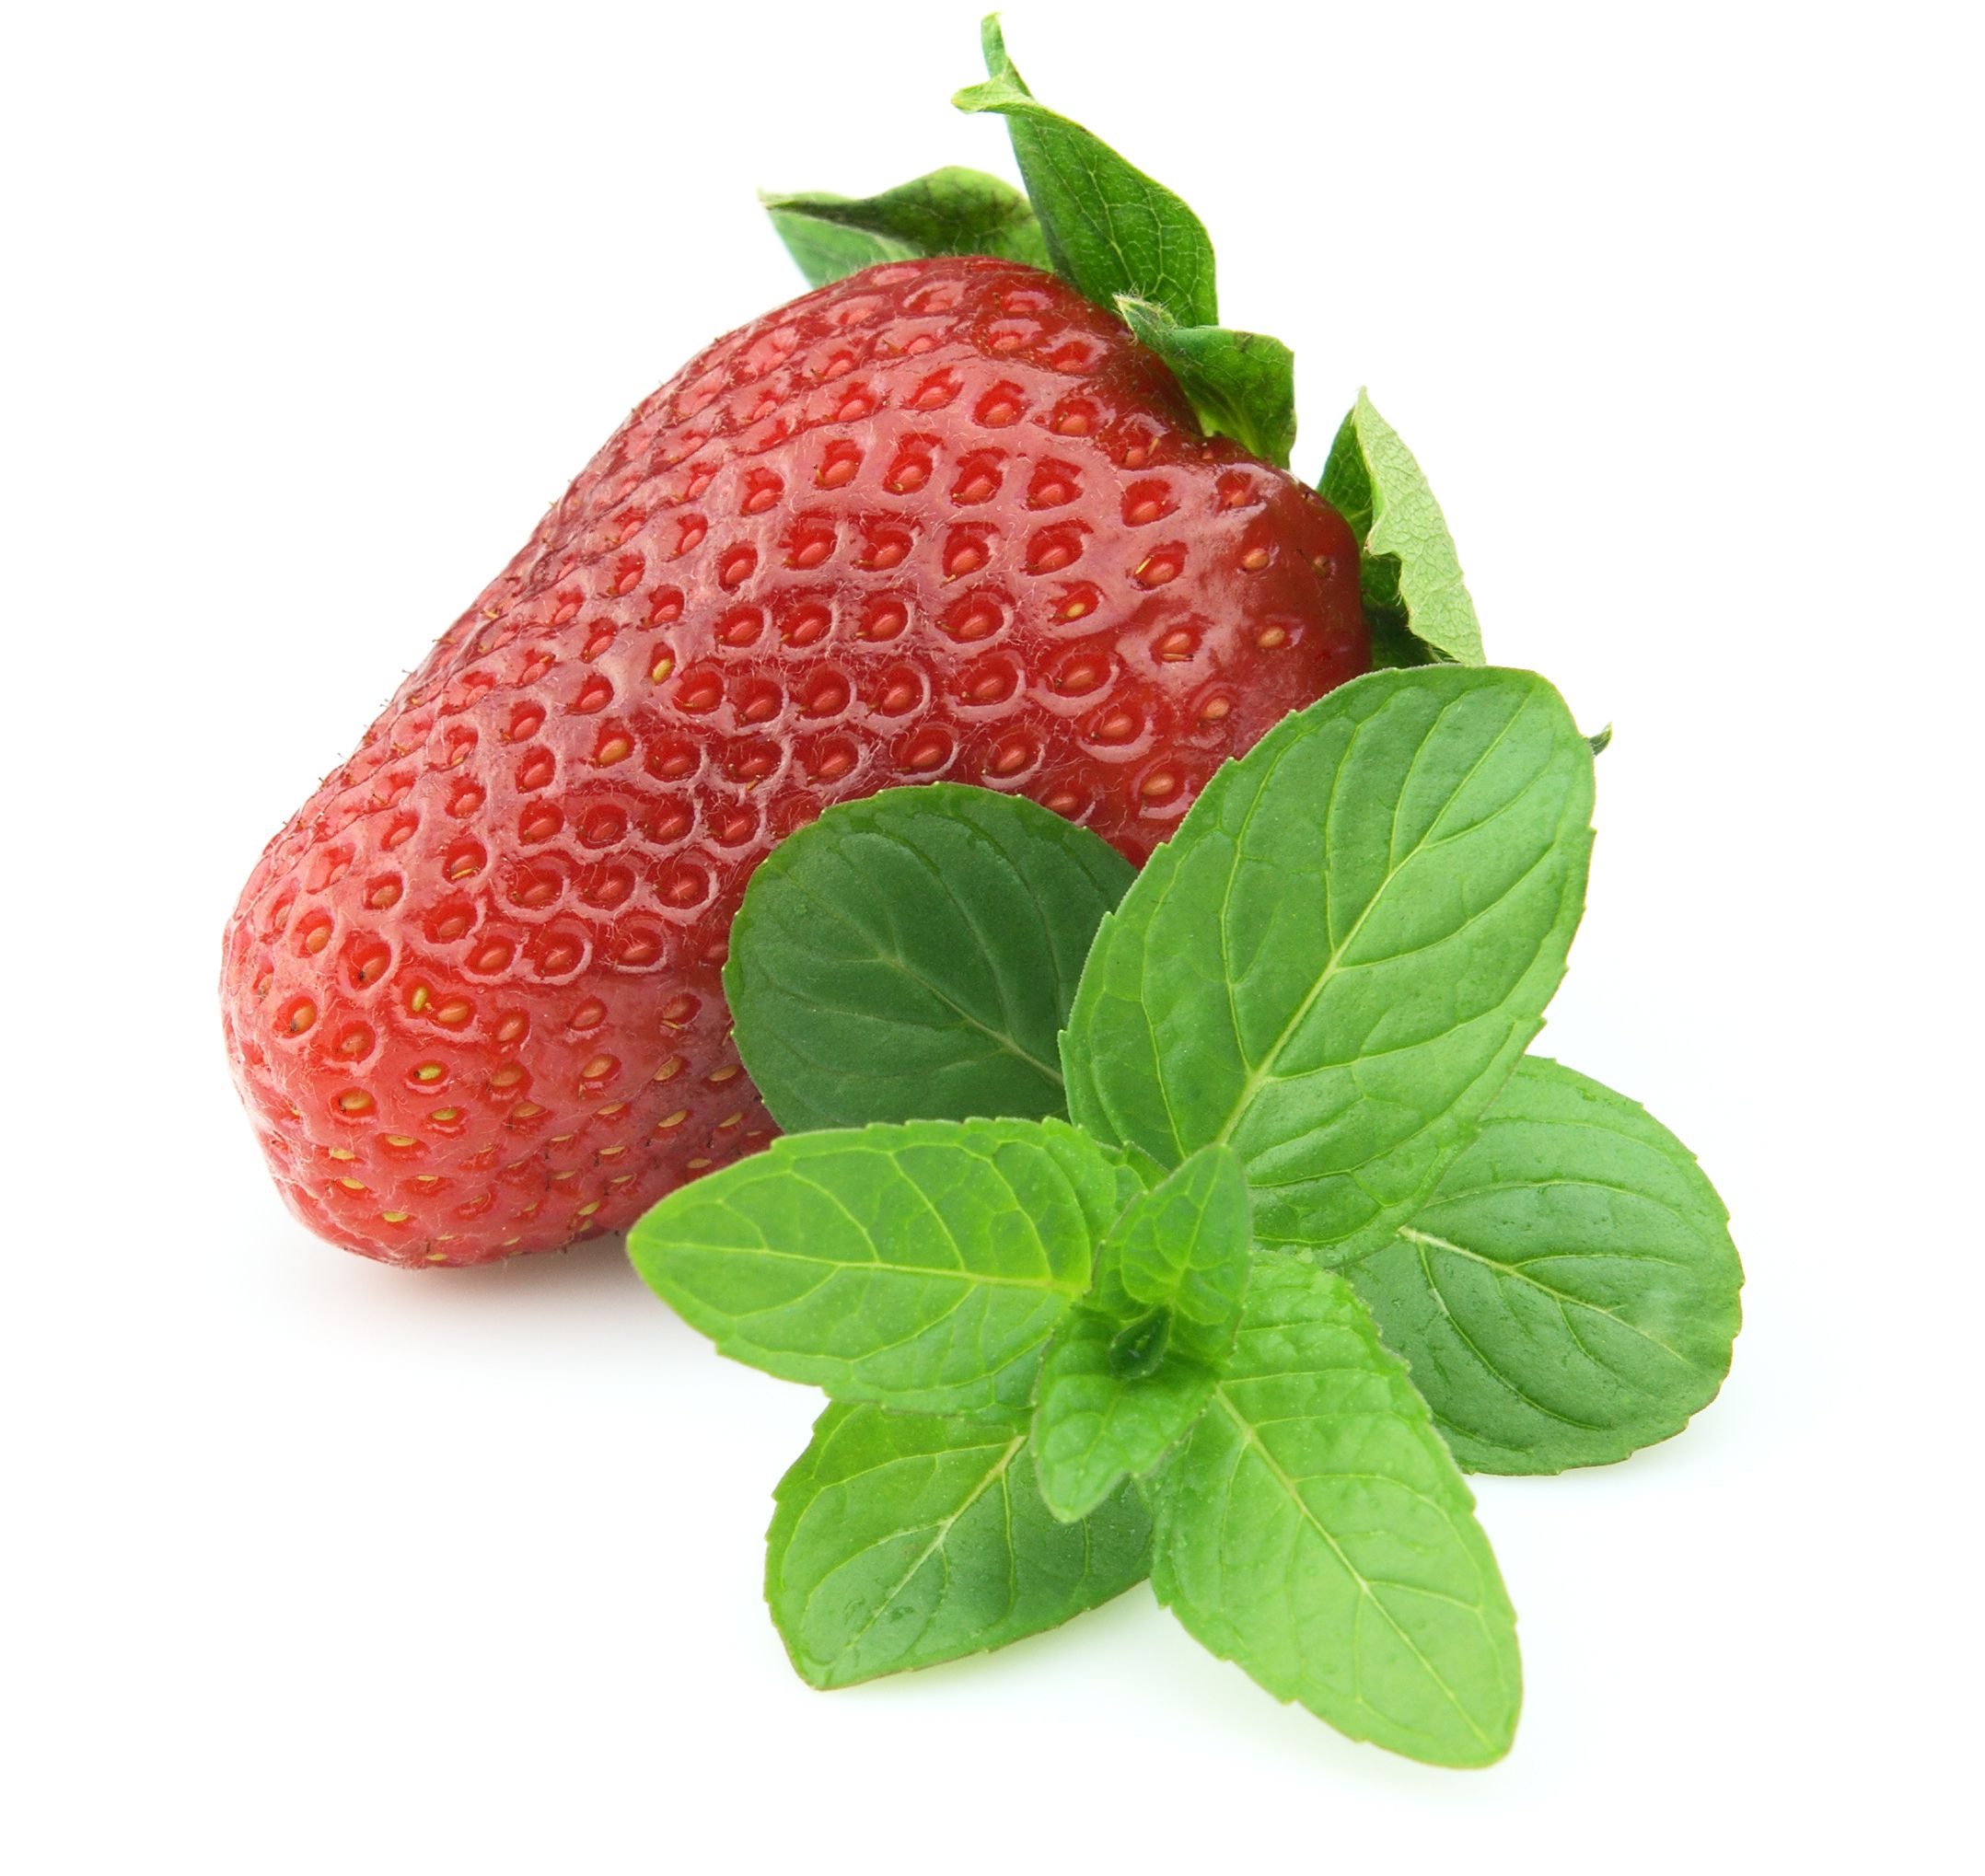 Erdbeerminze - Mentha Arvensis 'Strawberry'(Erdbeere) 